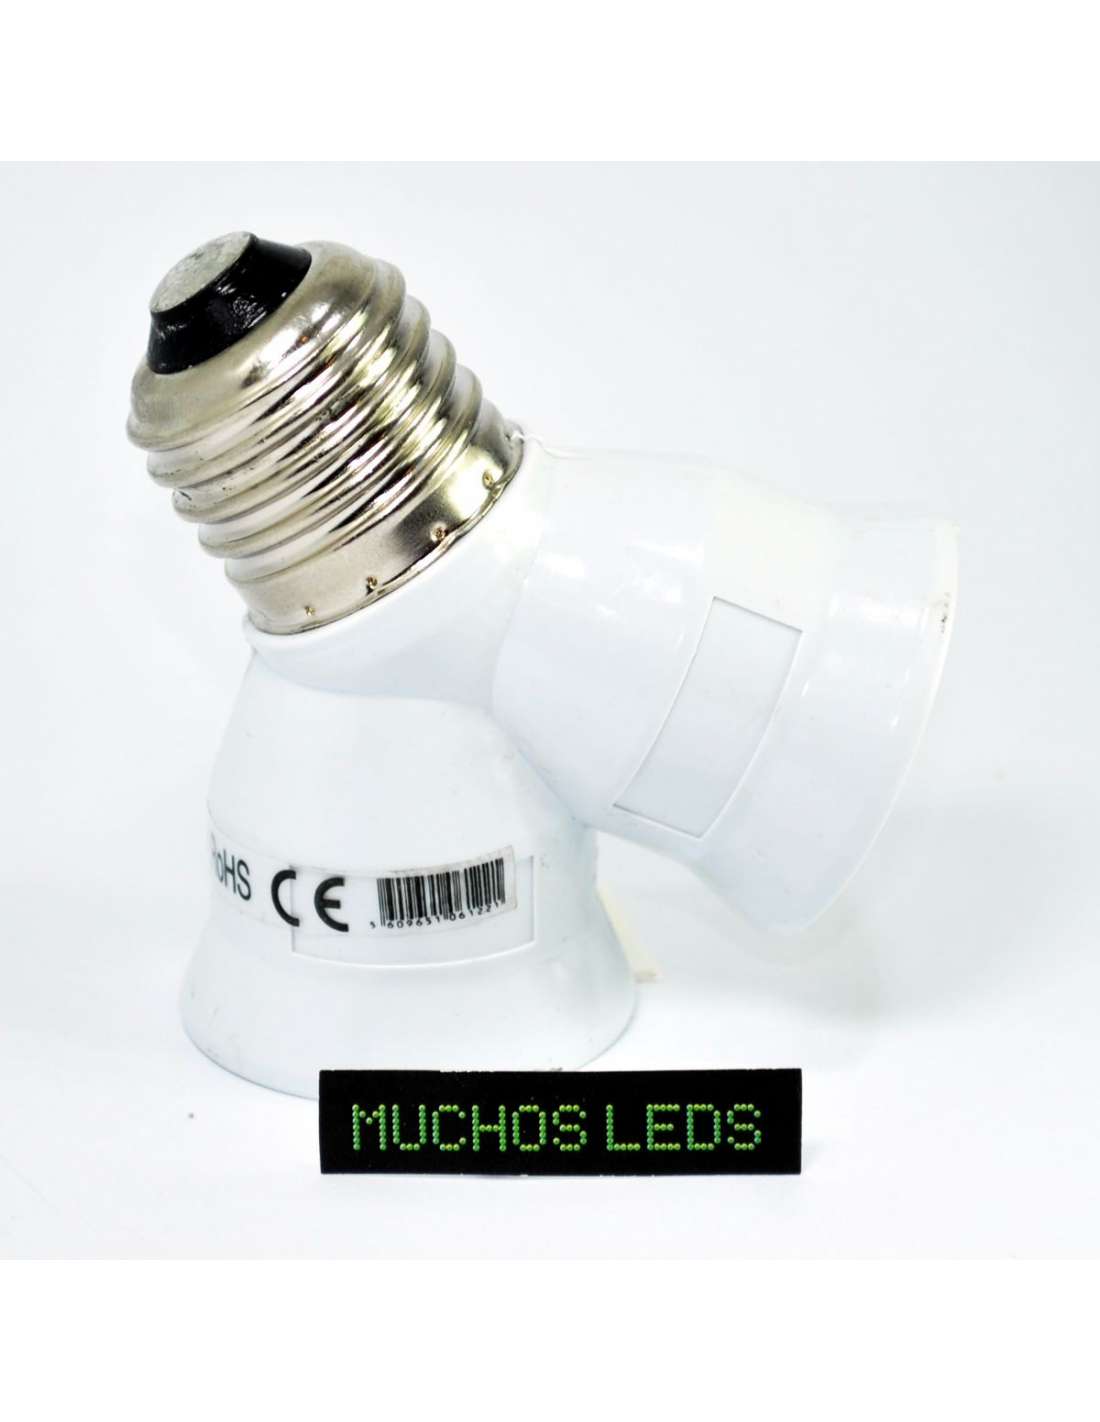 Adaptador / conversor para bombillas E27 a E14 - Bombillas LED -  Adaptadores y casquillos - LEDTHINK